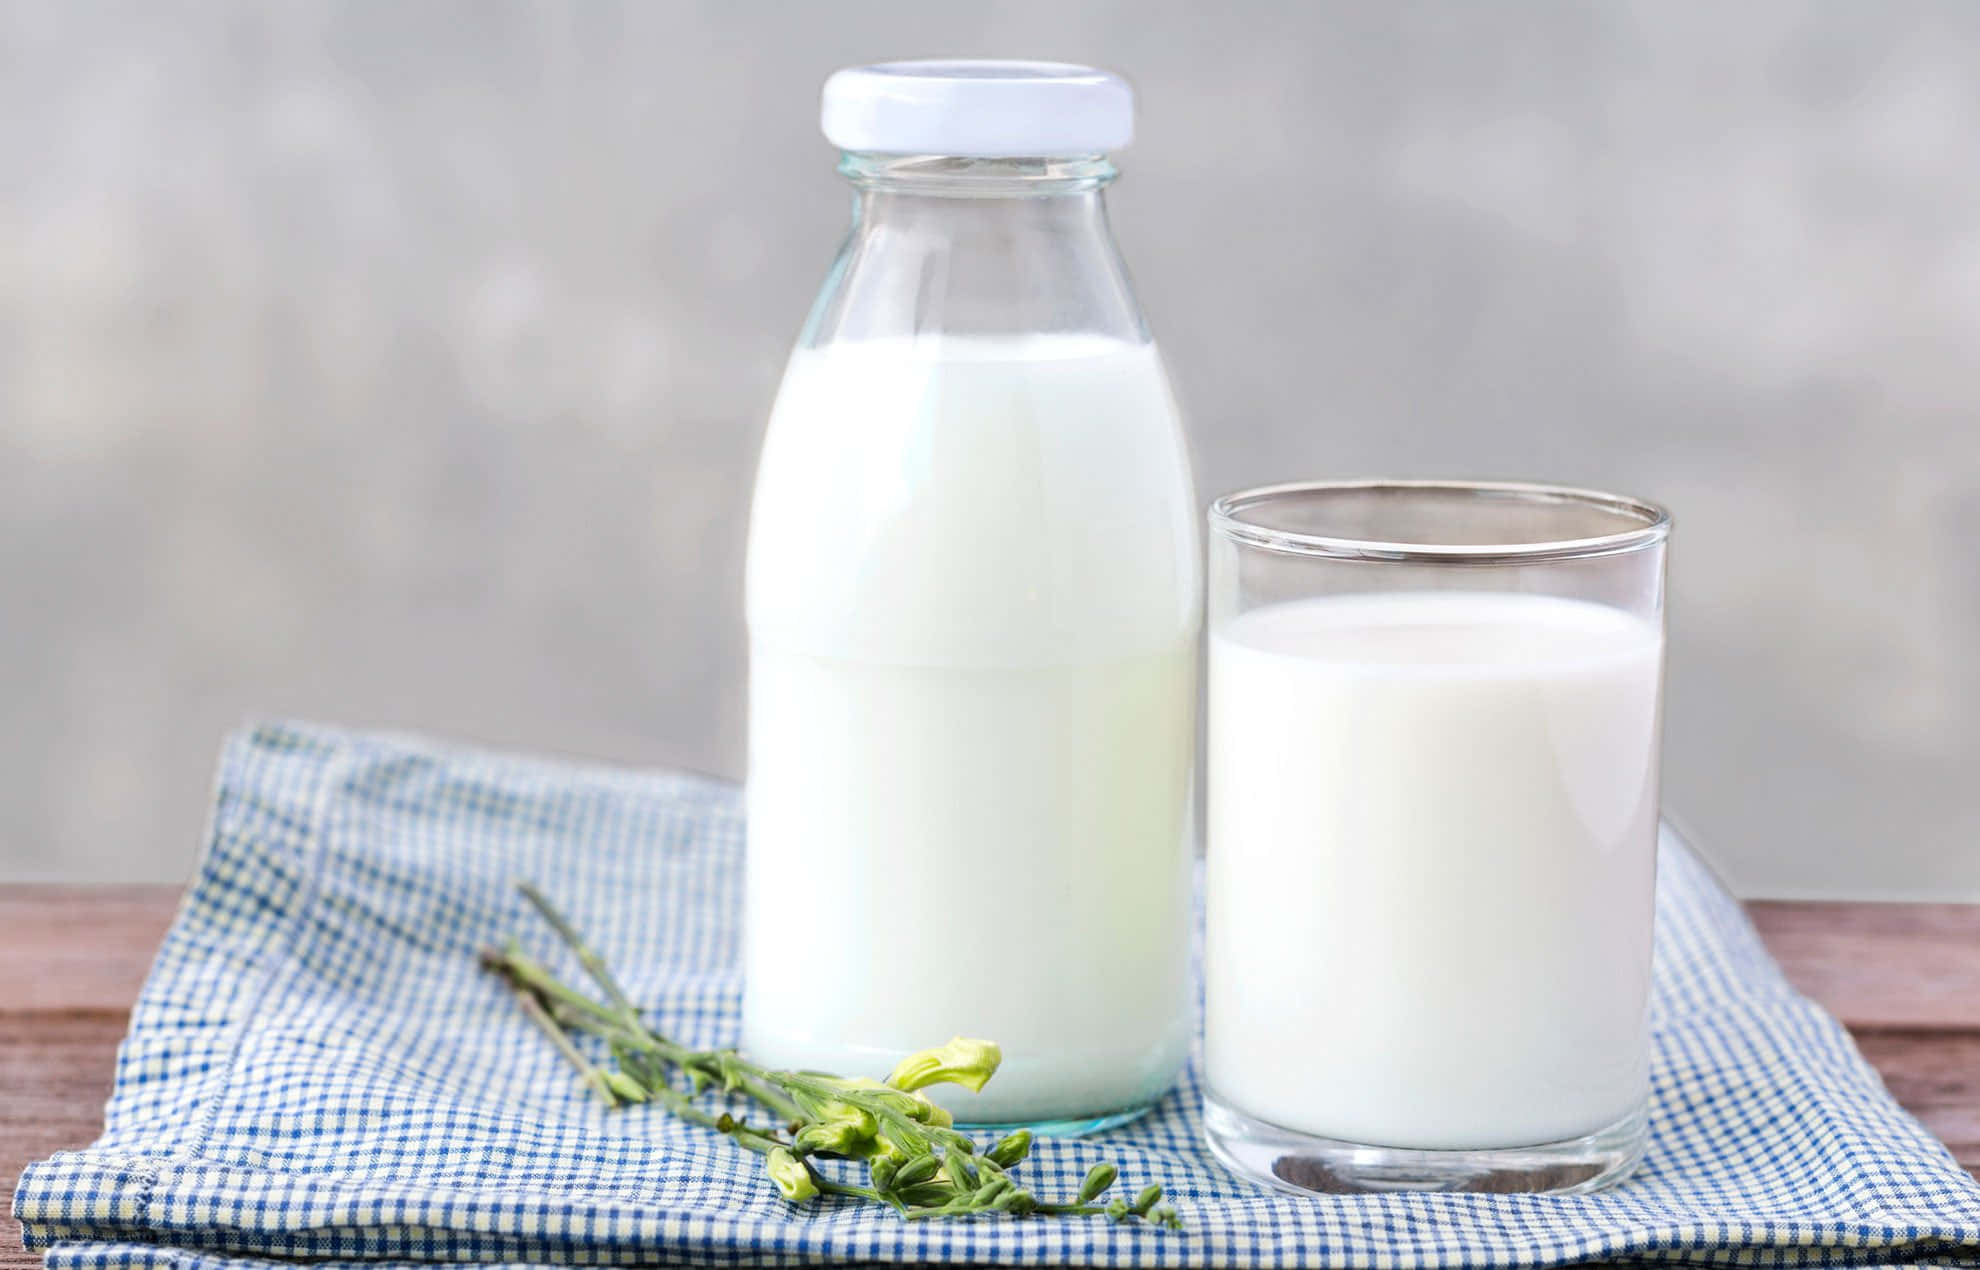 Einglas Milch Und Eine Flasche Milch Auf Einem Tisch.